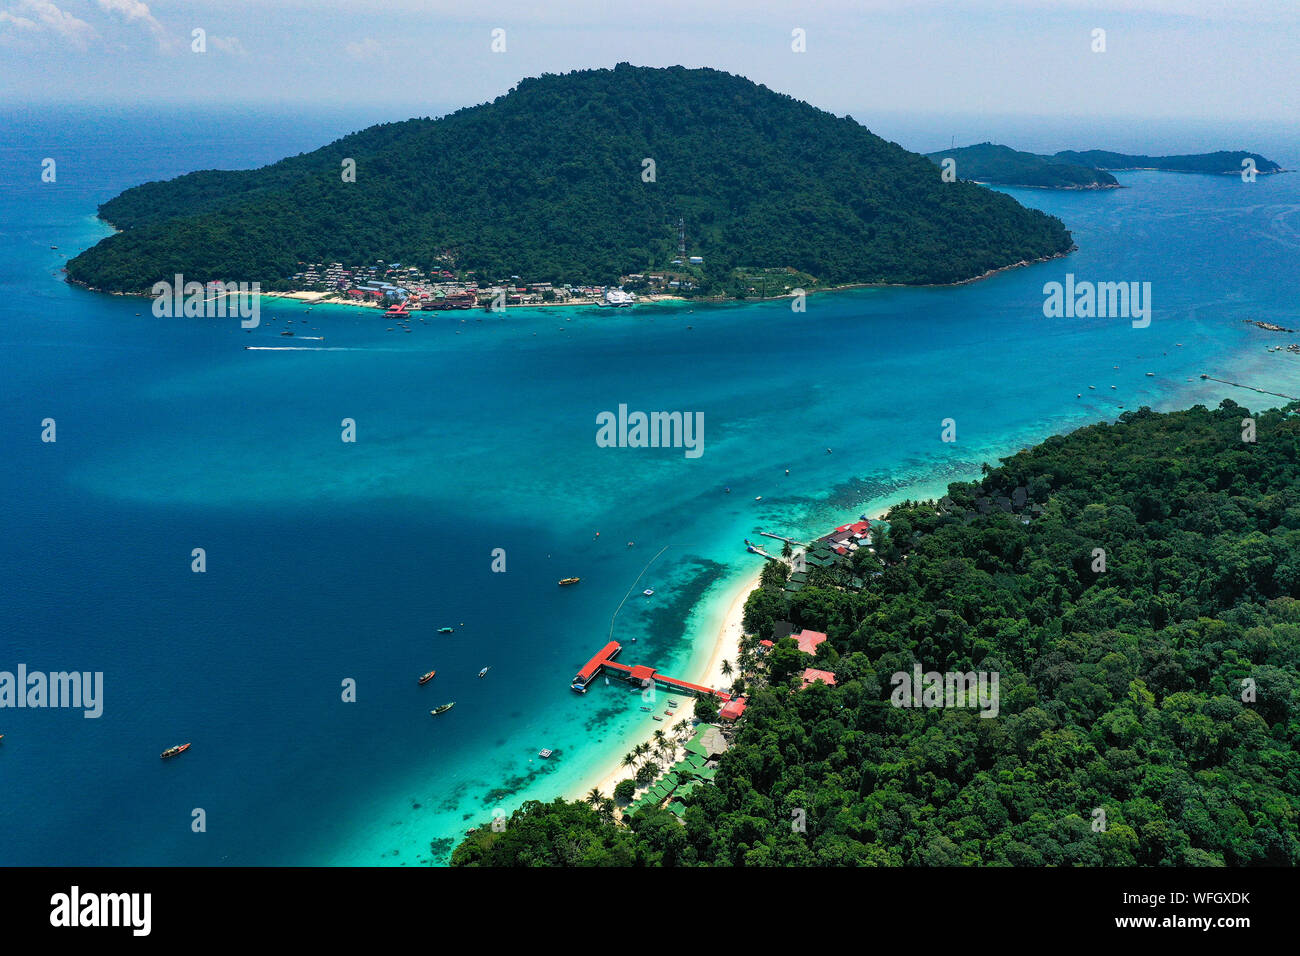 Aerial view of Pulau Perhentian Besar and Pulau Perhentian Kecil islands, Tenrengganu, Malaysia Stock Photo